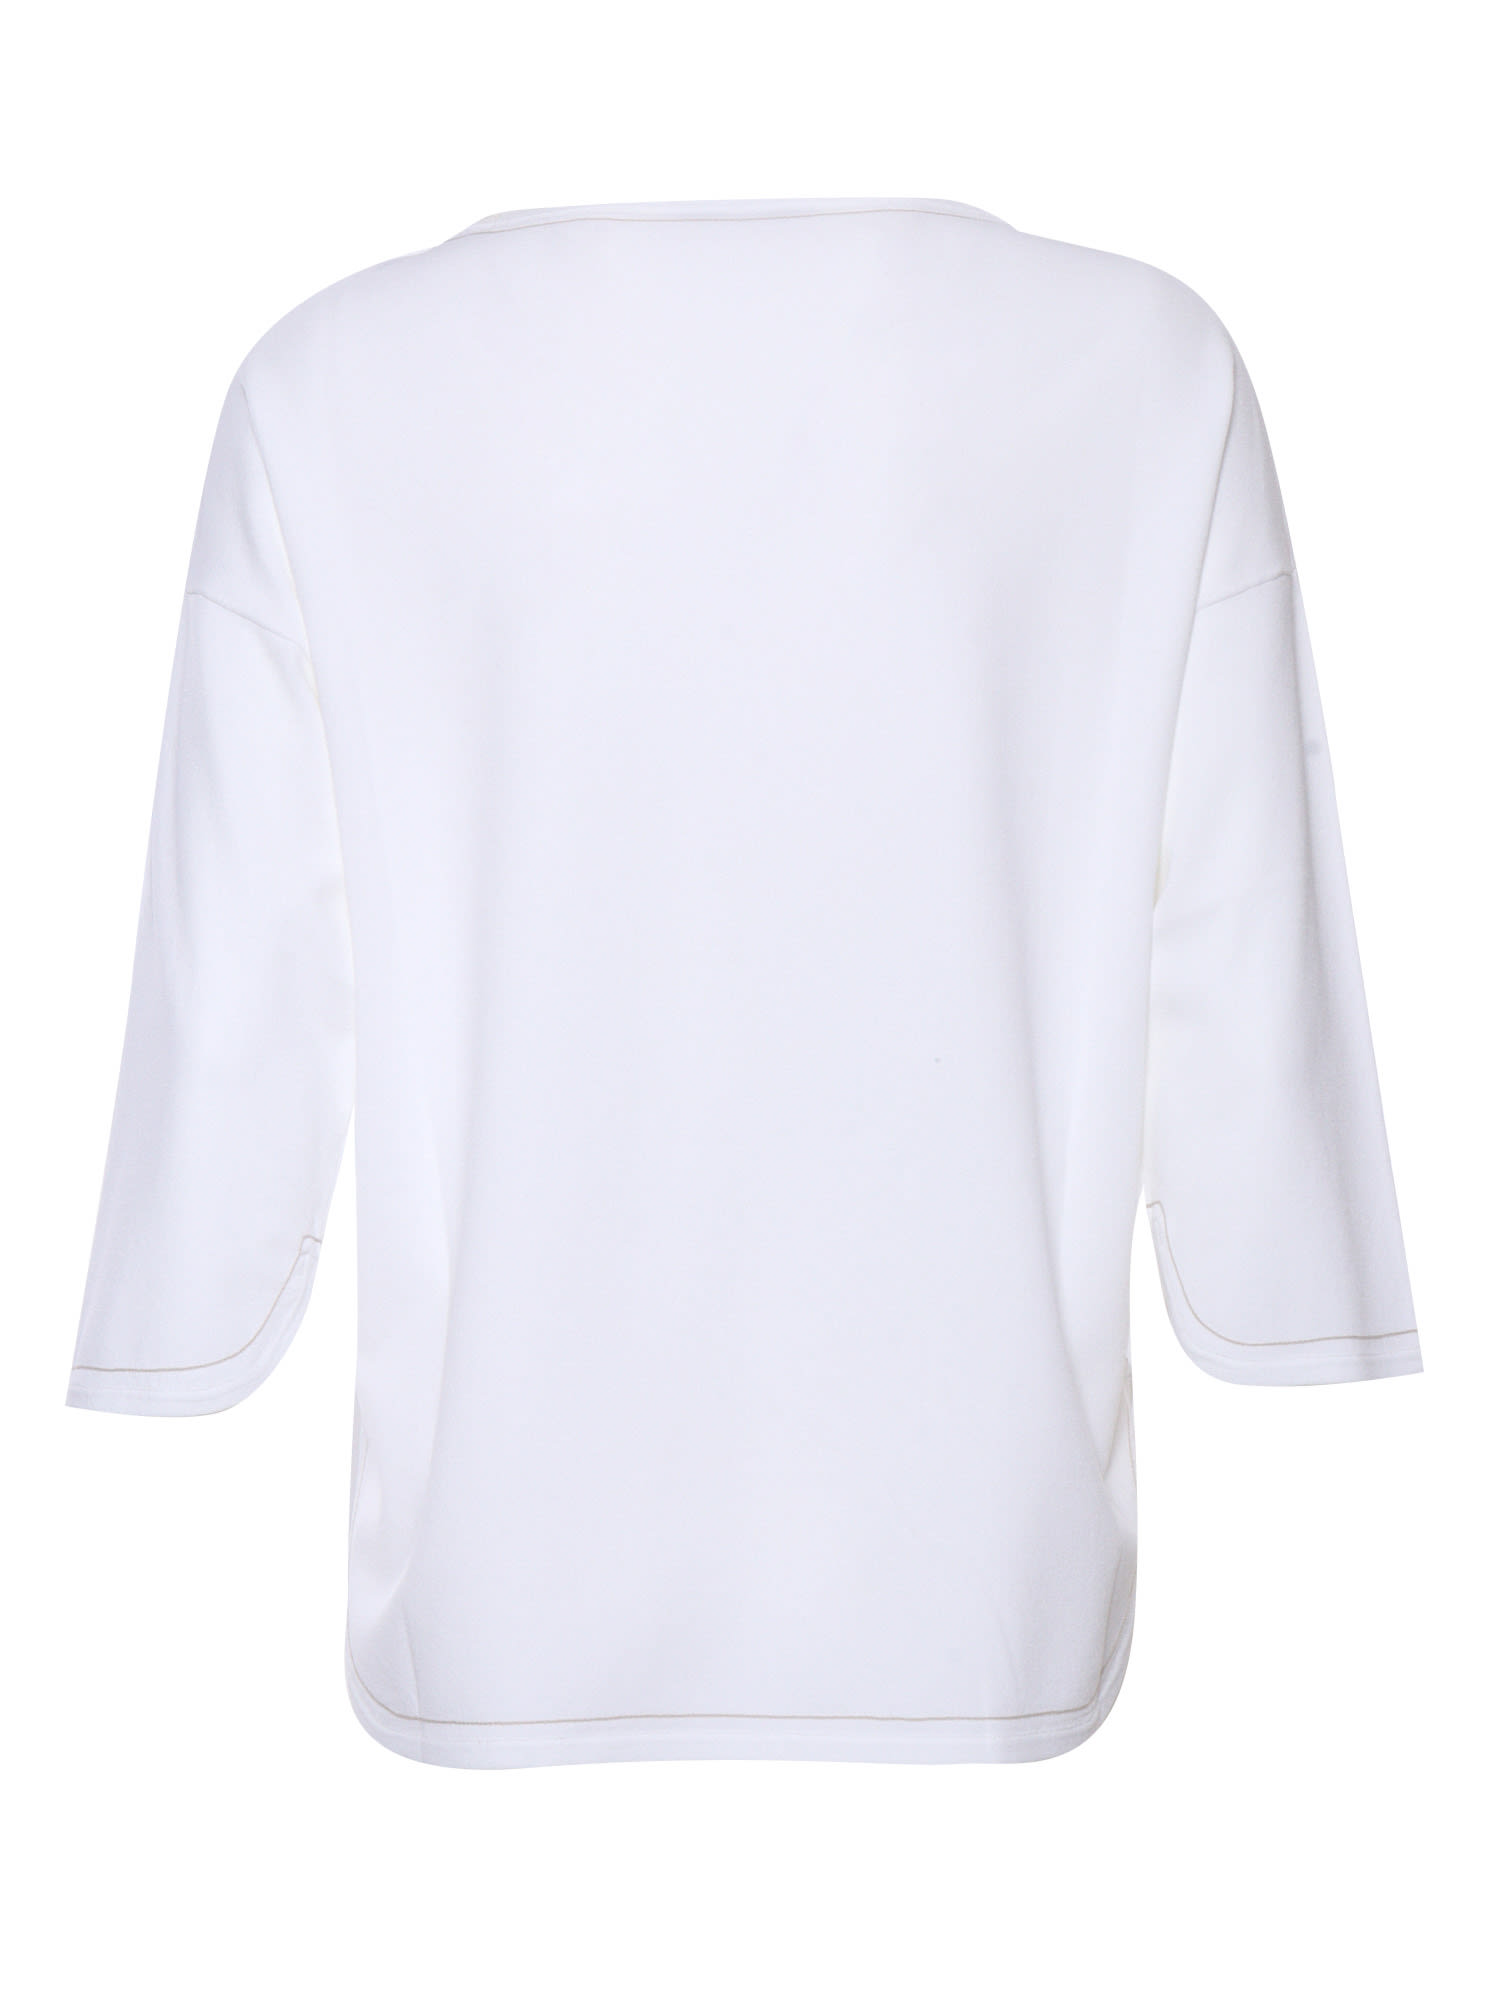 Shop Kangra White Sweater